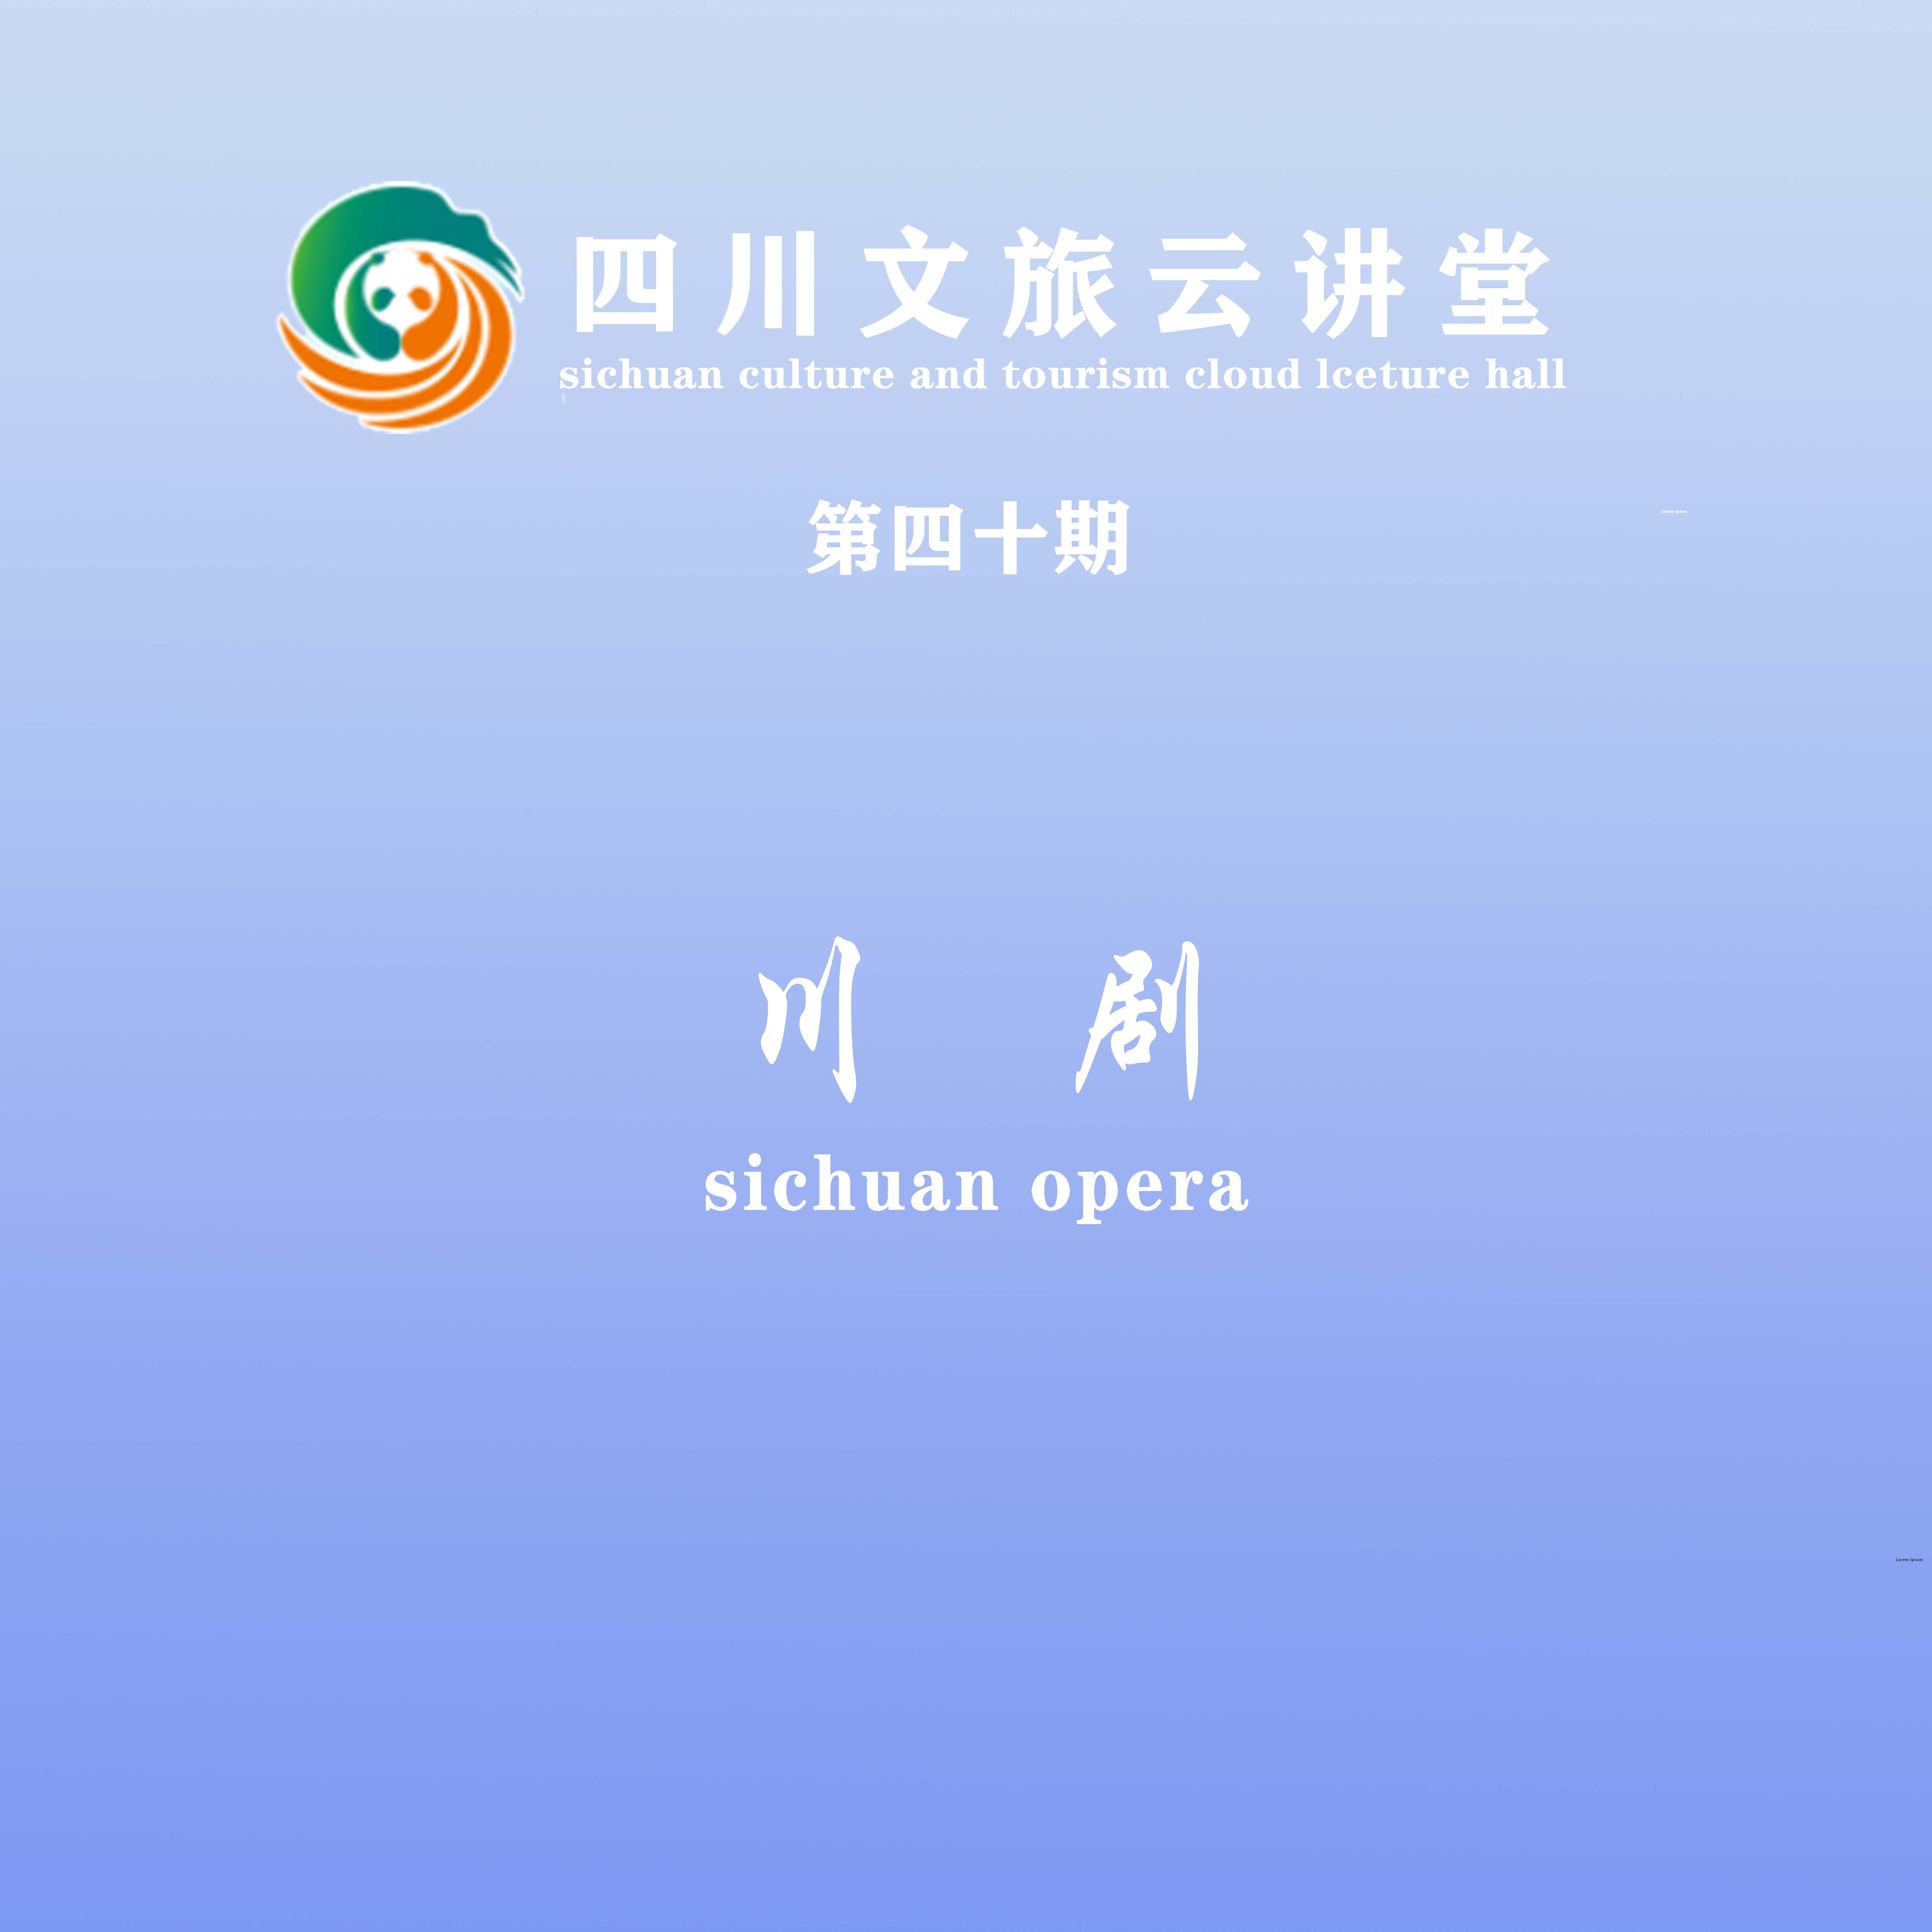 川剧 sichuan opera